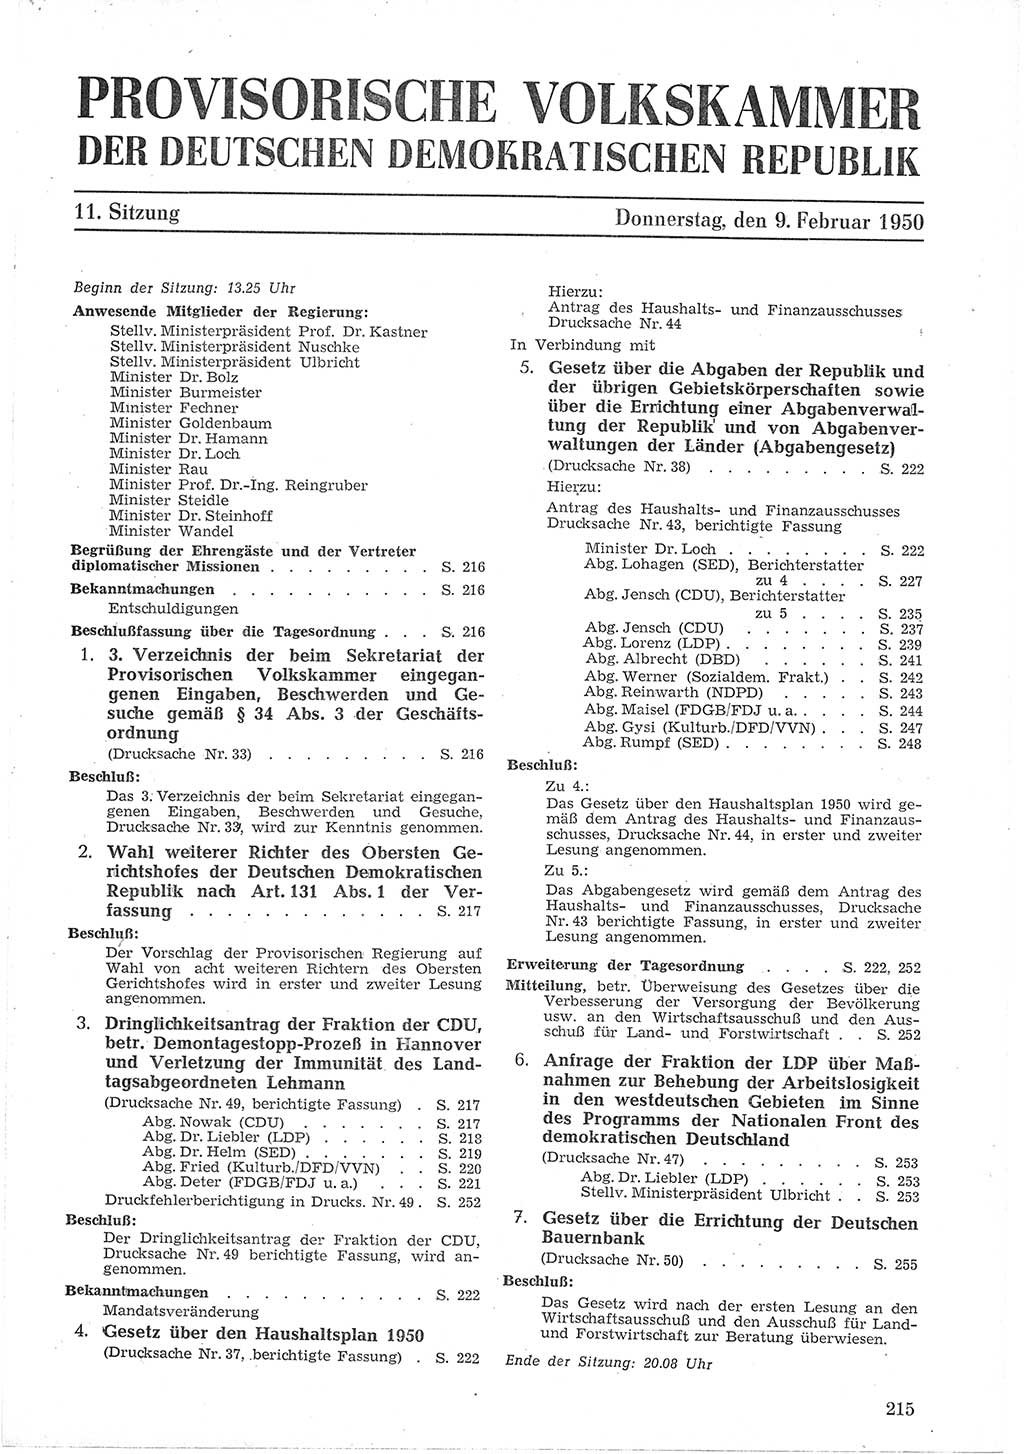 Provisorische Volkskammer (VK) der Deutschen Demokratischen Republik (DDR) 1949-1950, Dokument 229 (Prov. VK DDR 1949-1950, Dok. 229)